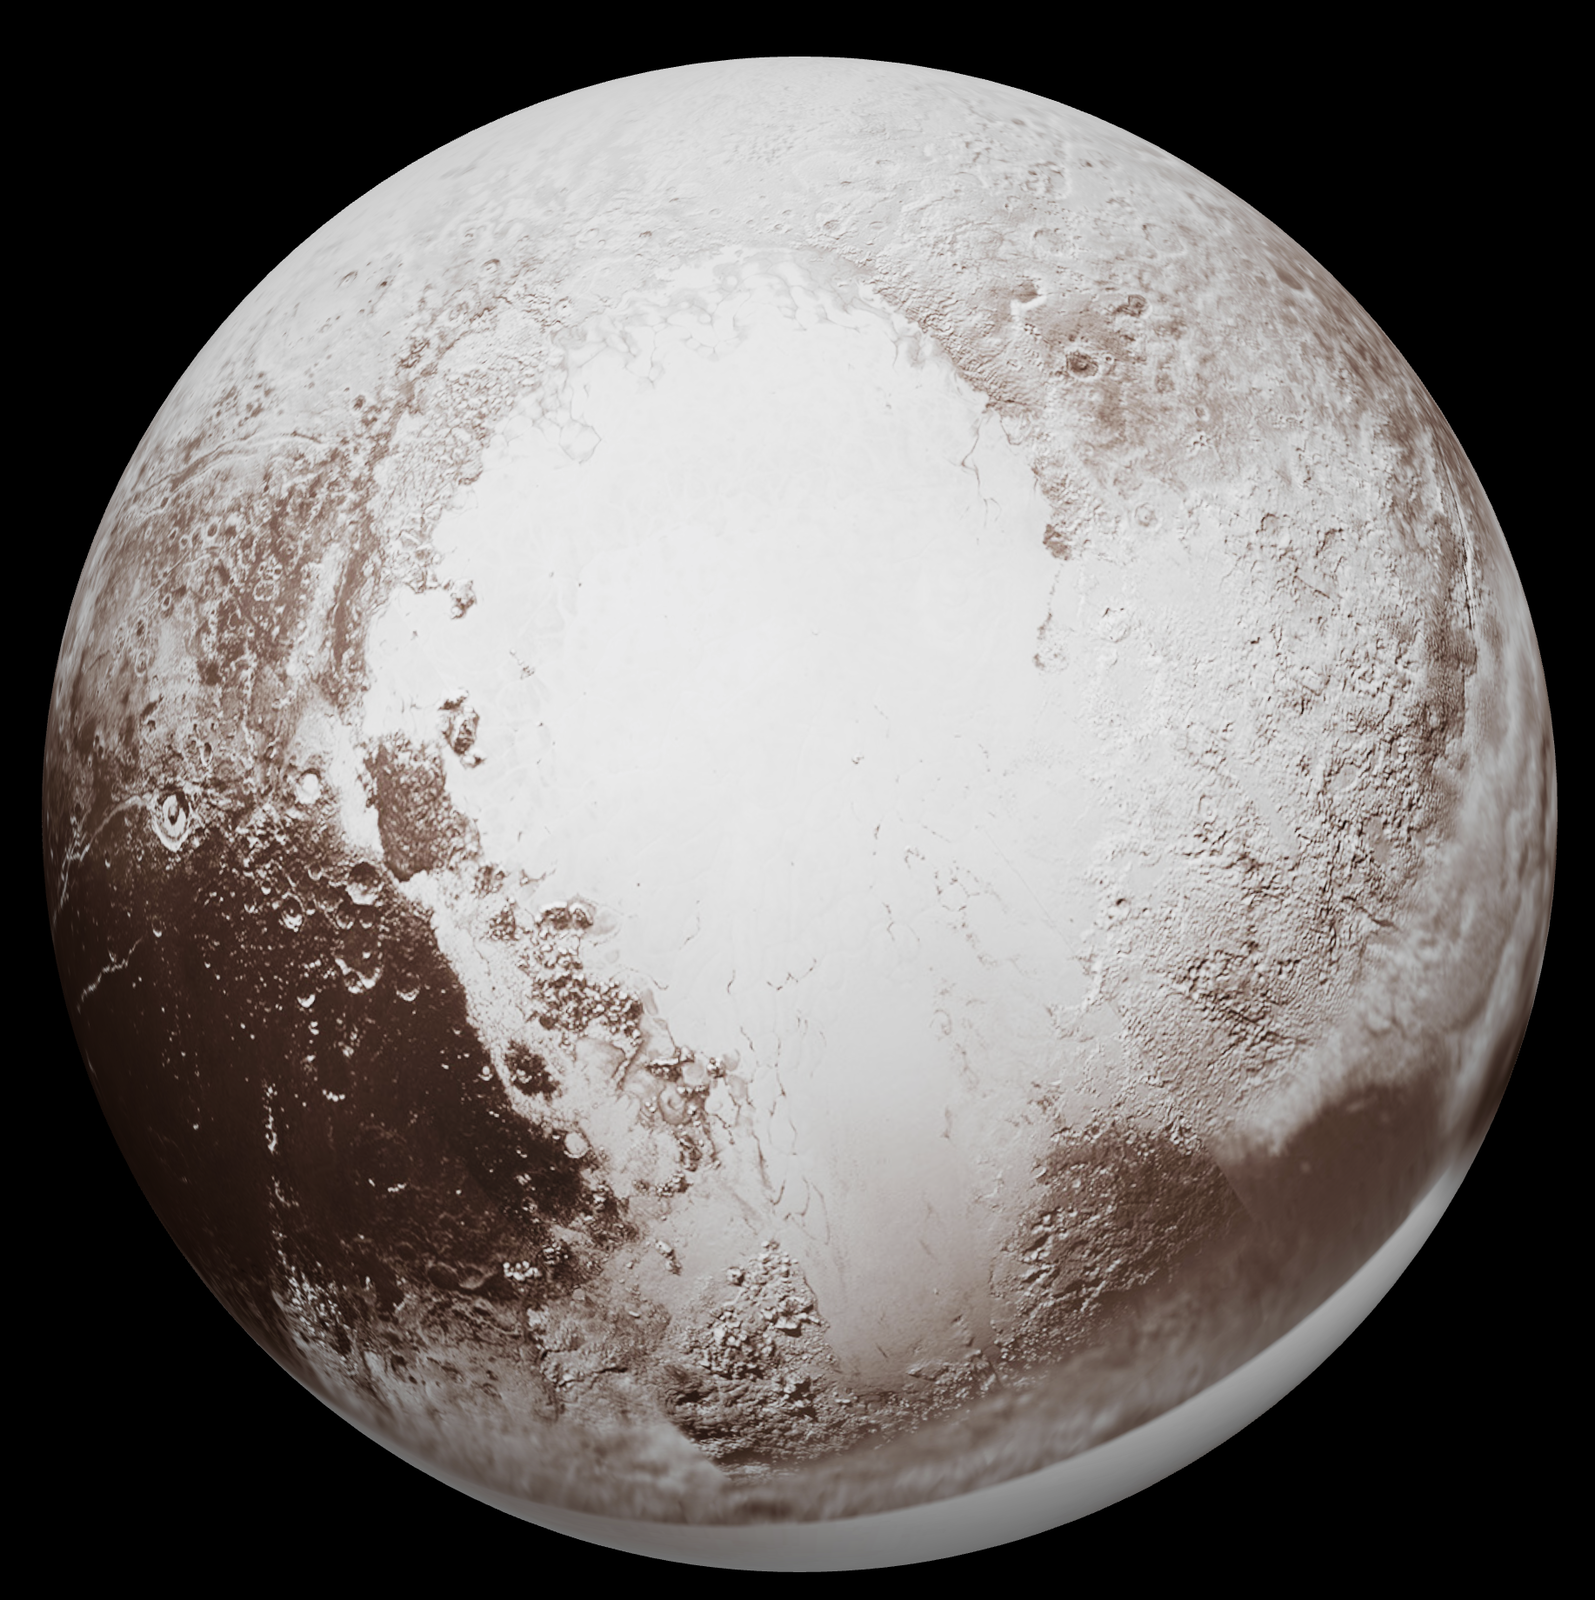 Modele 3D przedstawiają planety karłowate Pluton i Ceres. Modele te są tak zbudowane, że pozwalają przy użyciu myszki obracać planety i oglądać ich powierzchnię z każdej strony. Powierzchnia Plutona jest z jednej strony gładka i ma kolor jasnoszary, druga strona jest brunatno‑szara, usiana kraterami, które widoczne są jako nieregularne ciemniejsze kropki z jaśniejszymi obwódkami na jasnobrunatnym tle. Wrażenie struktury bogatej, niejednorodnej z przeważającym kolorem brunatnym.